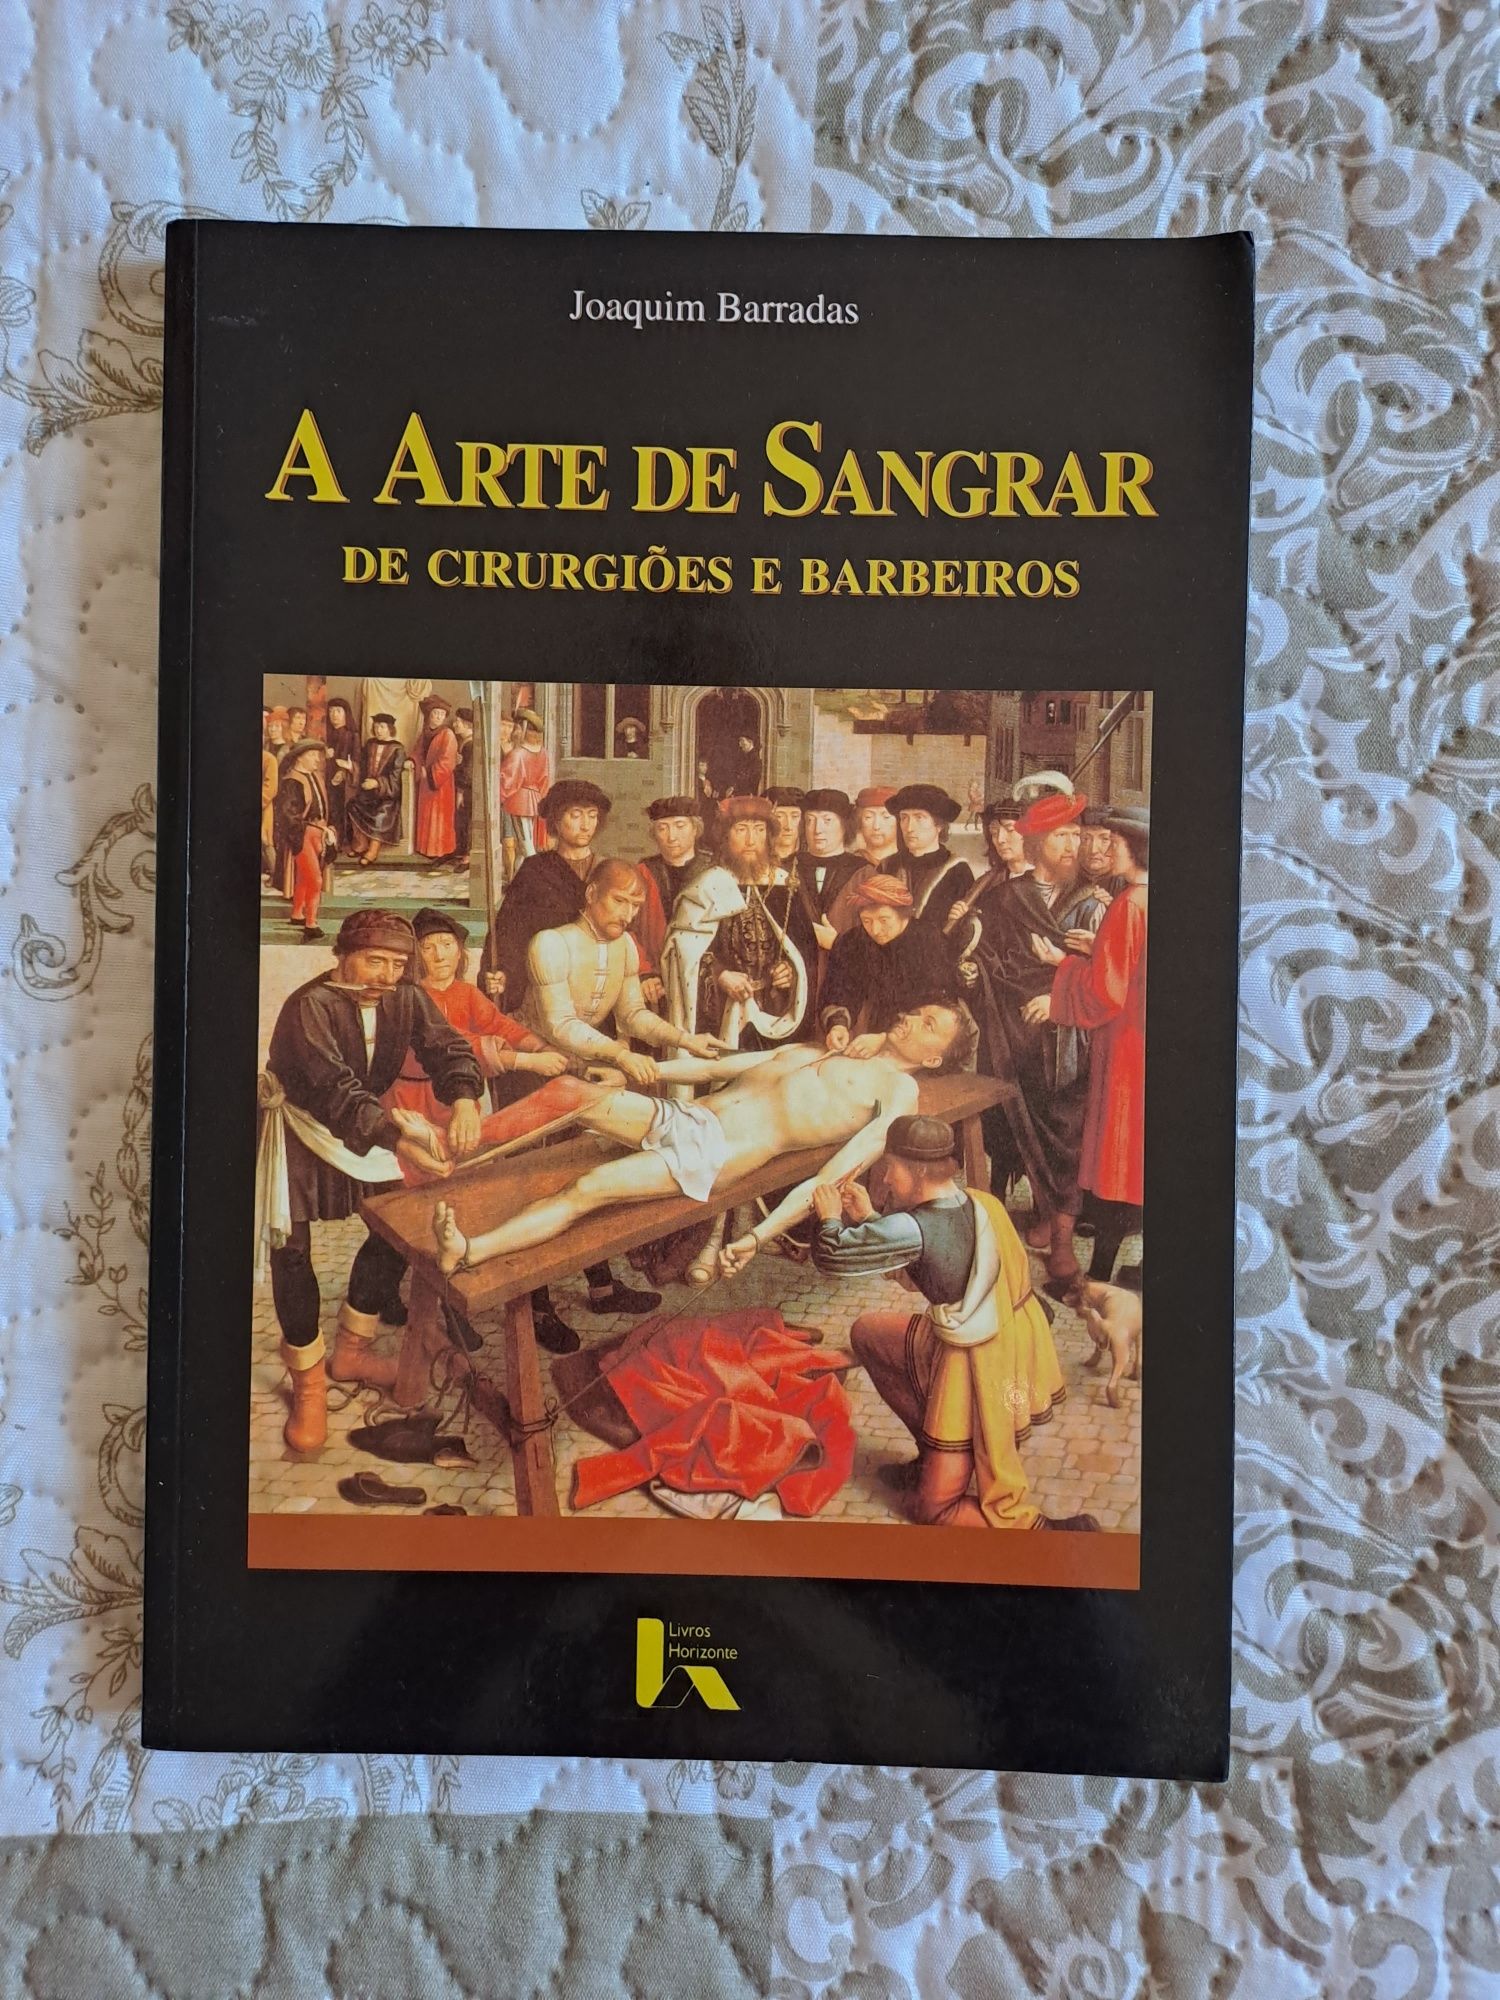 Livro "A Arte de Sangrar" de Joaquim Barradas